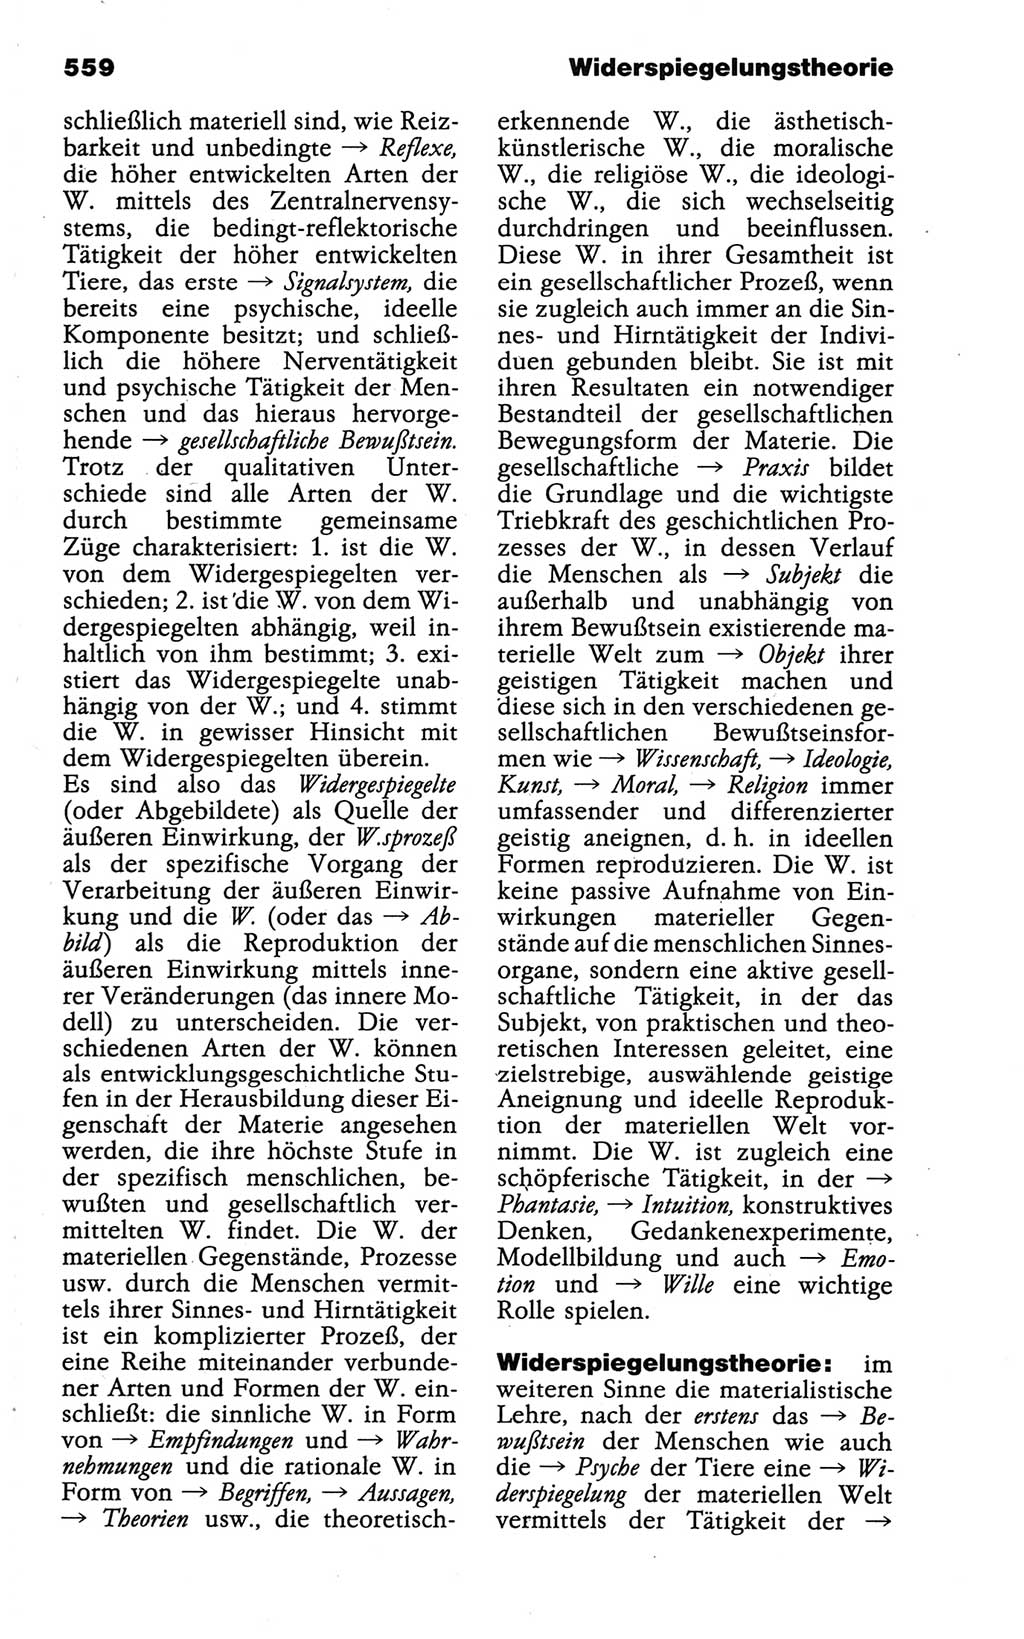 Wörterbuch der marxistisch-leninistischen Philosophie [Deutsche Demokratische Republik (DDR)] 1986, Seite 559 (Wb. ML Phil. DDR 1986, S. 559)